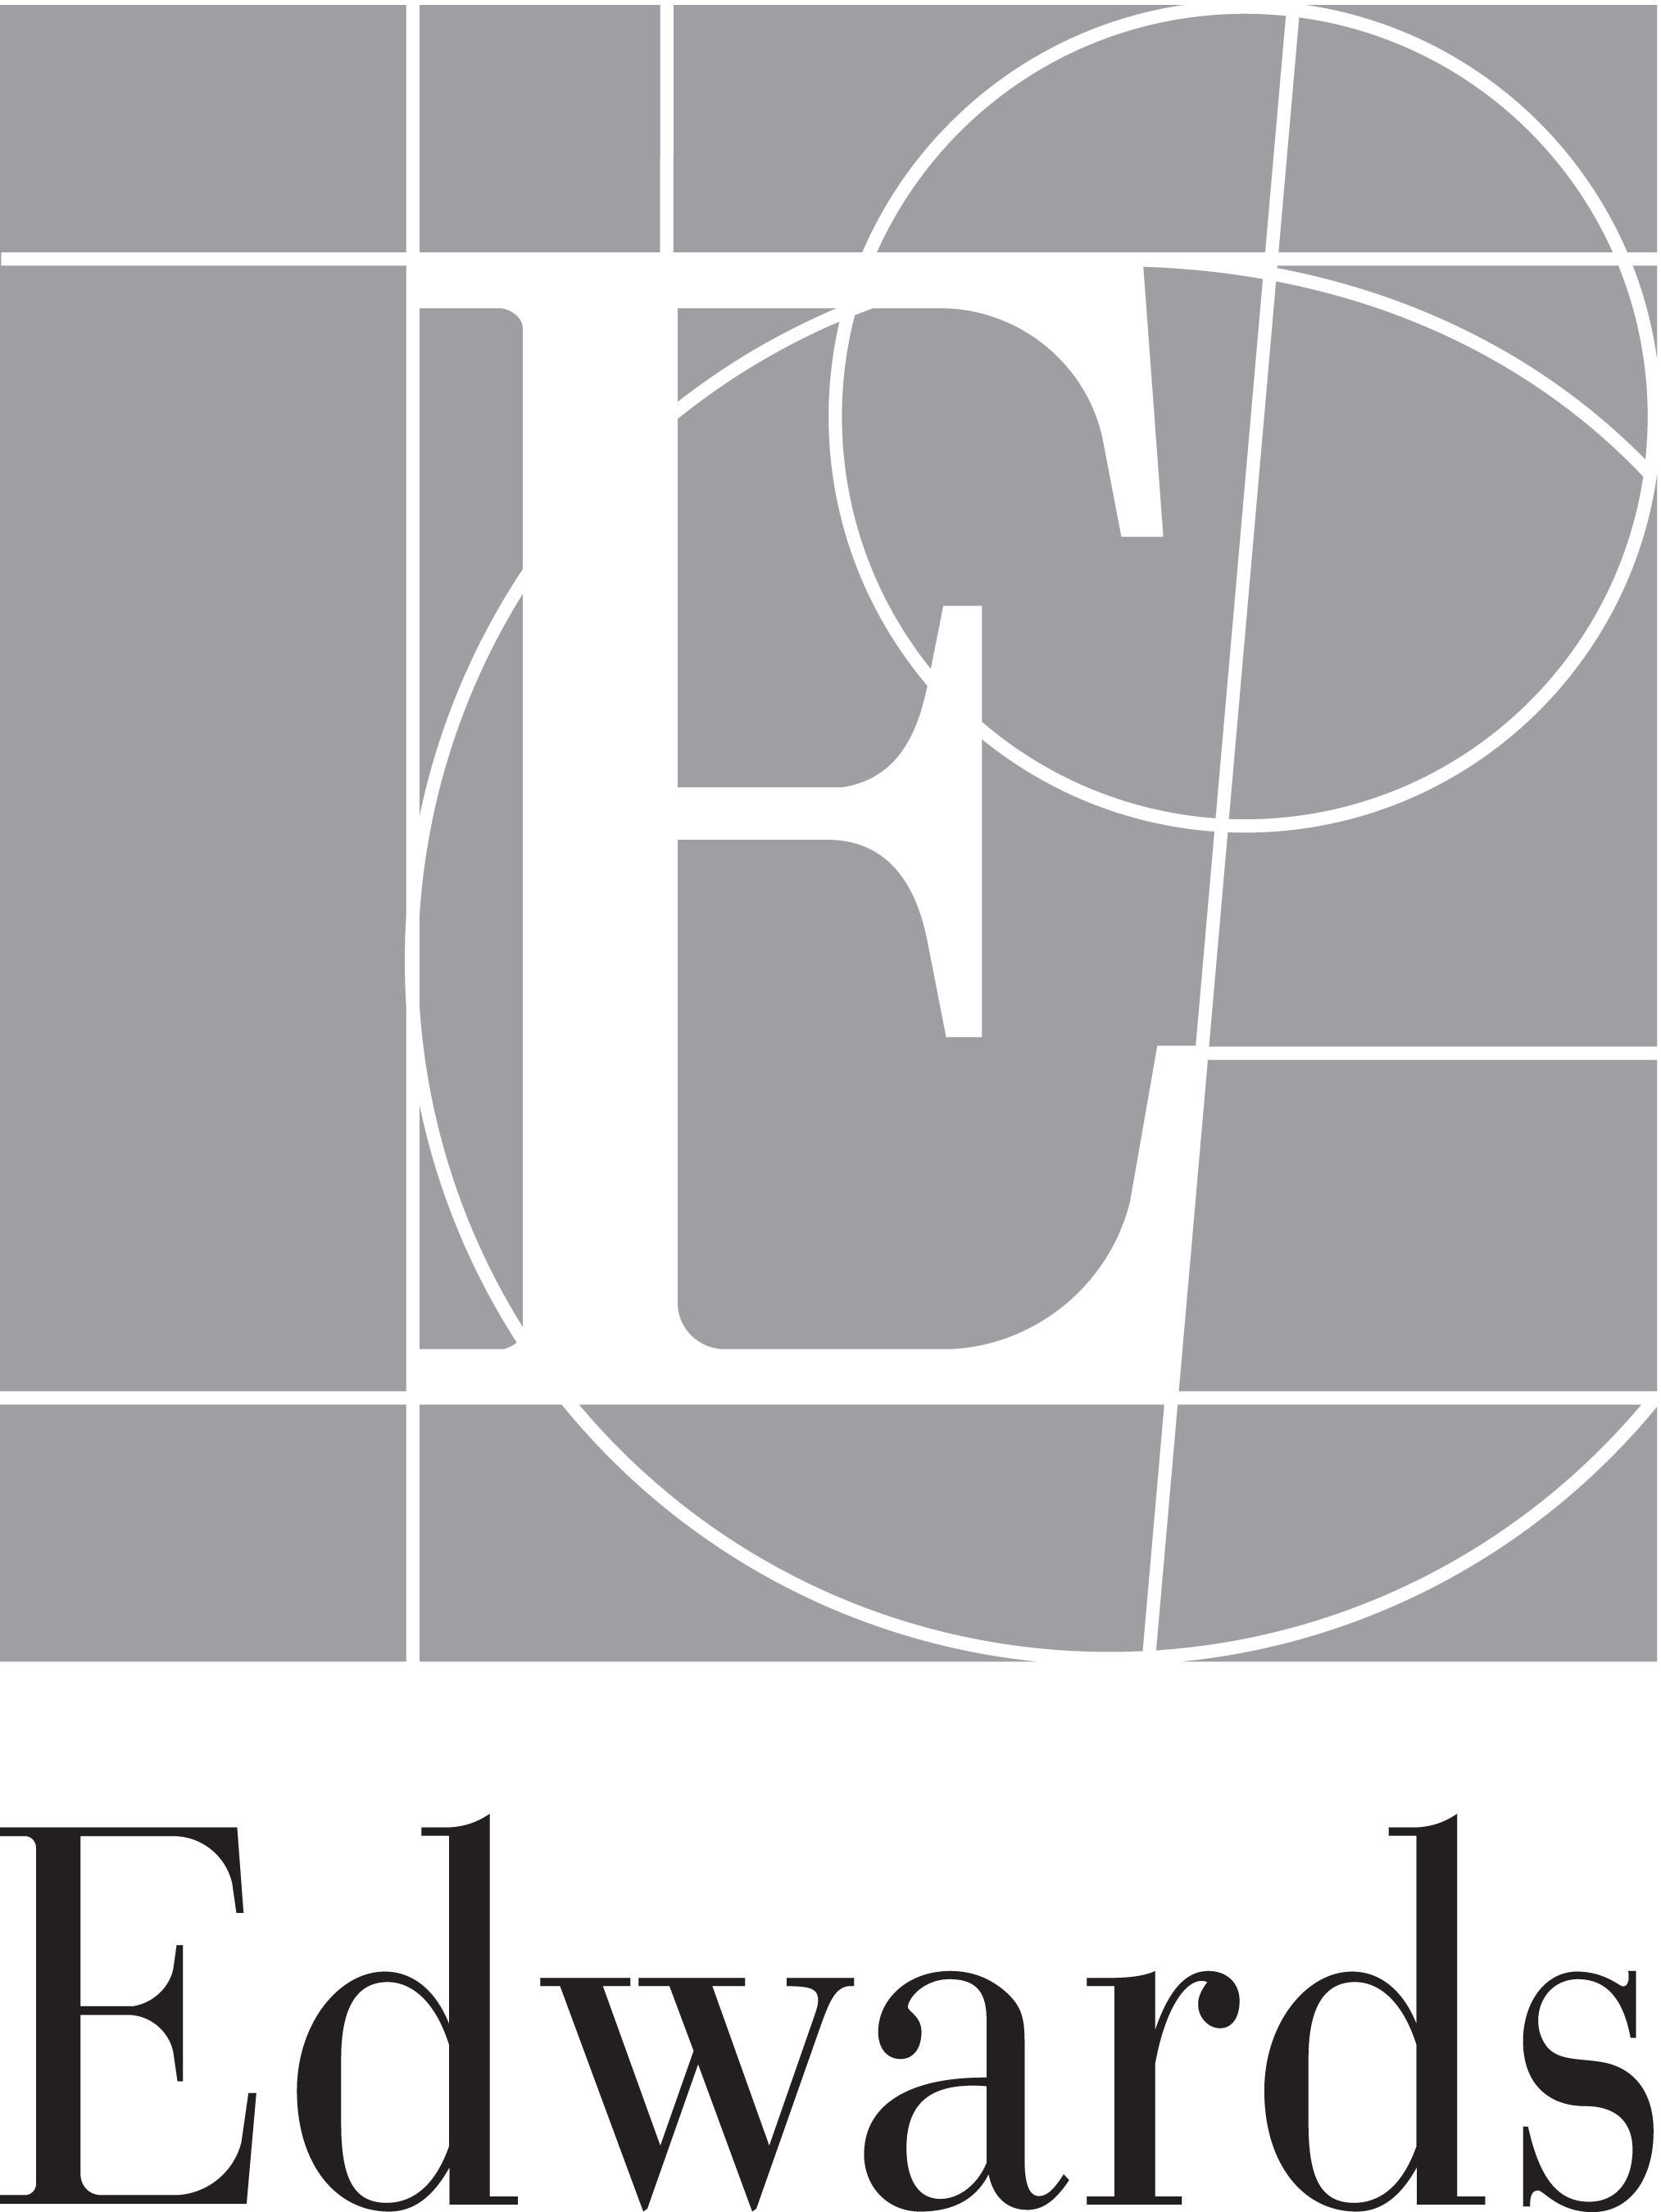 Edwards Lifesciences logo.